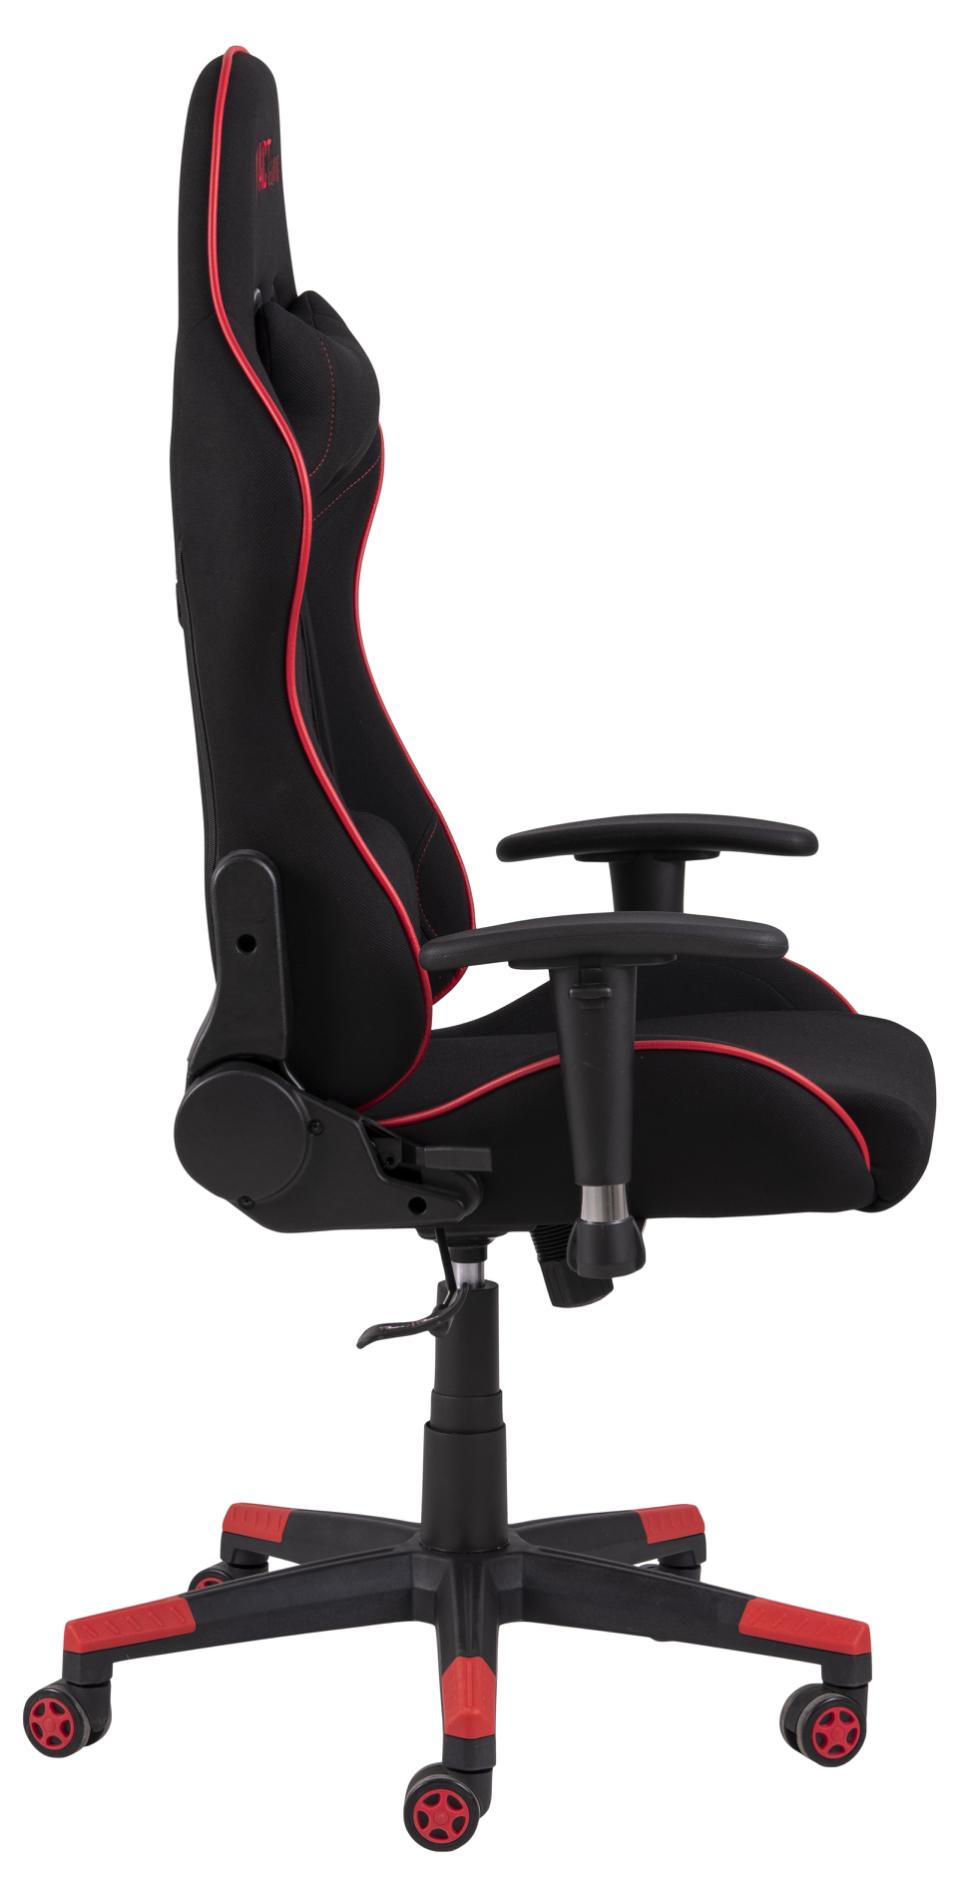 Le modèle Raccoon ACT™ SX est le fauteuil de gaming professionnel 